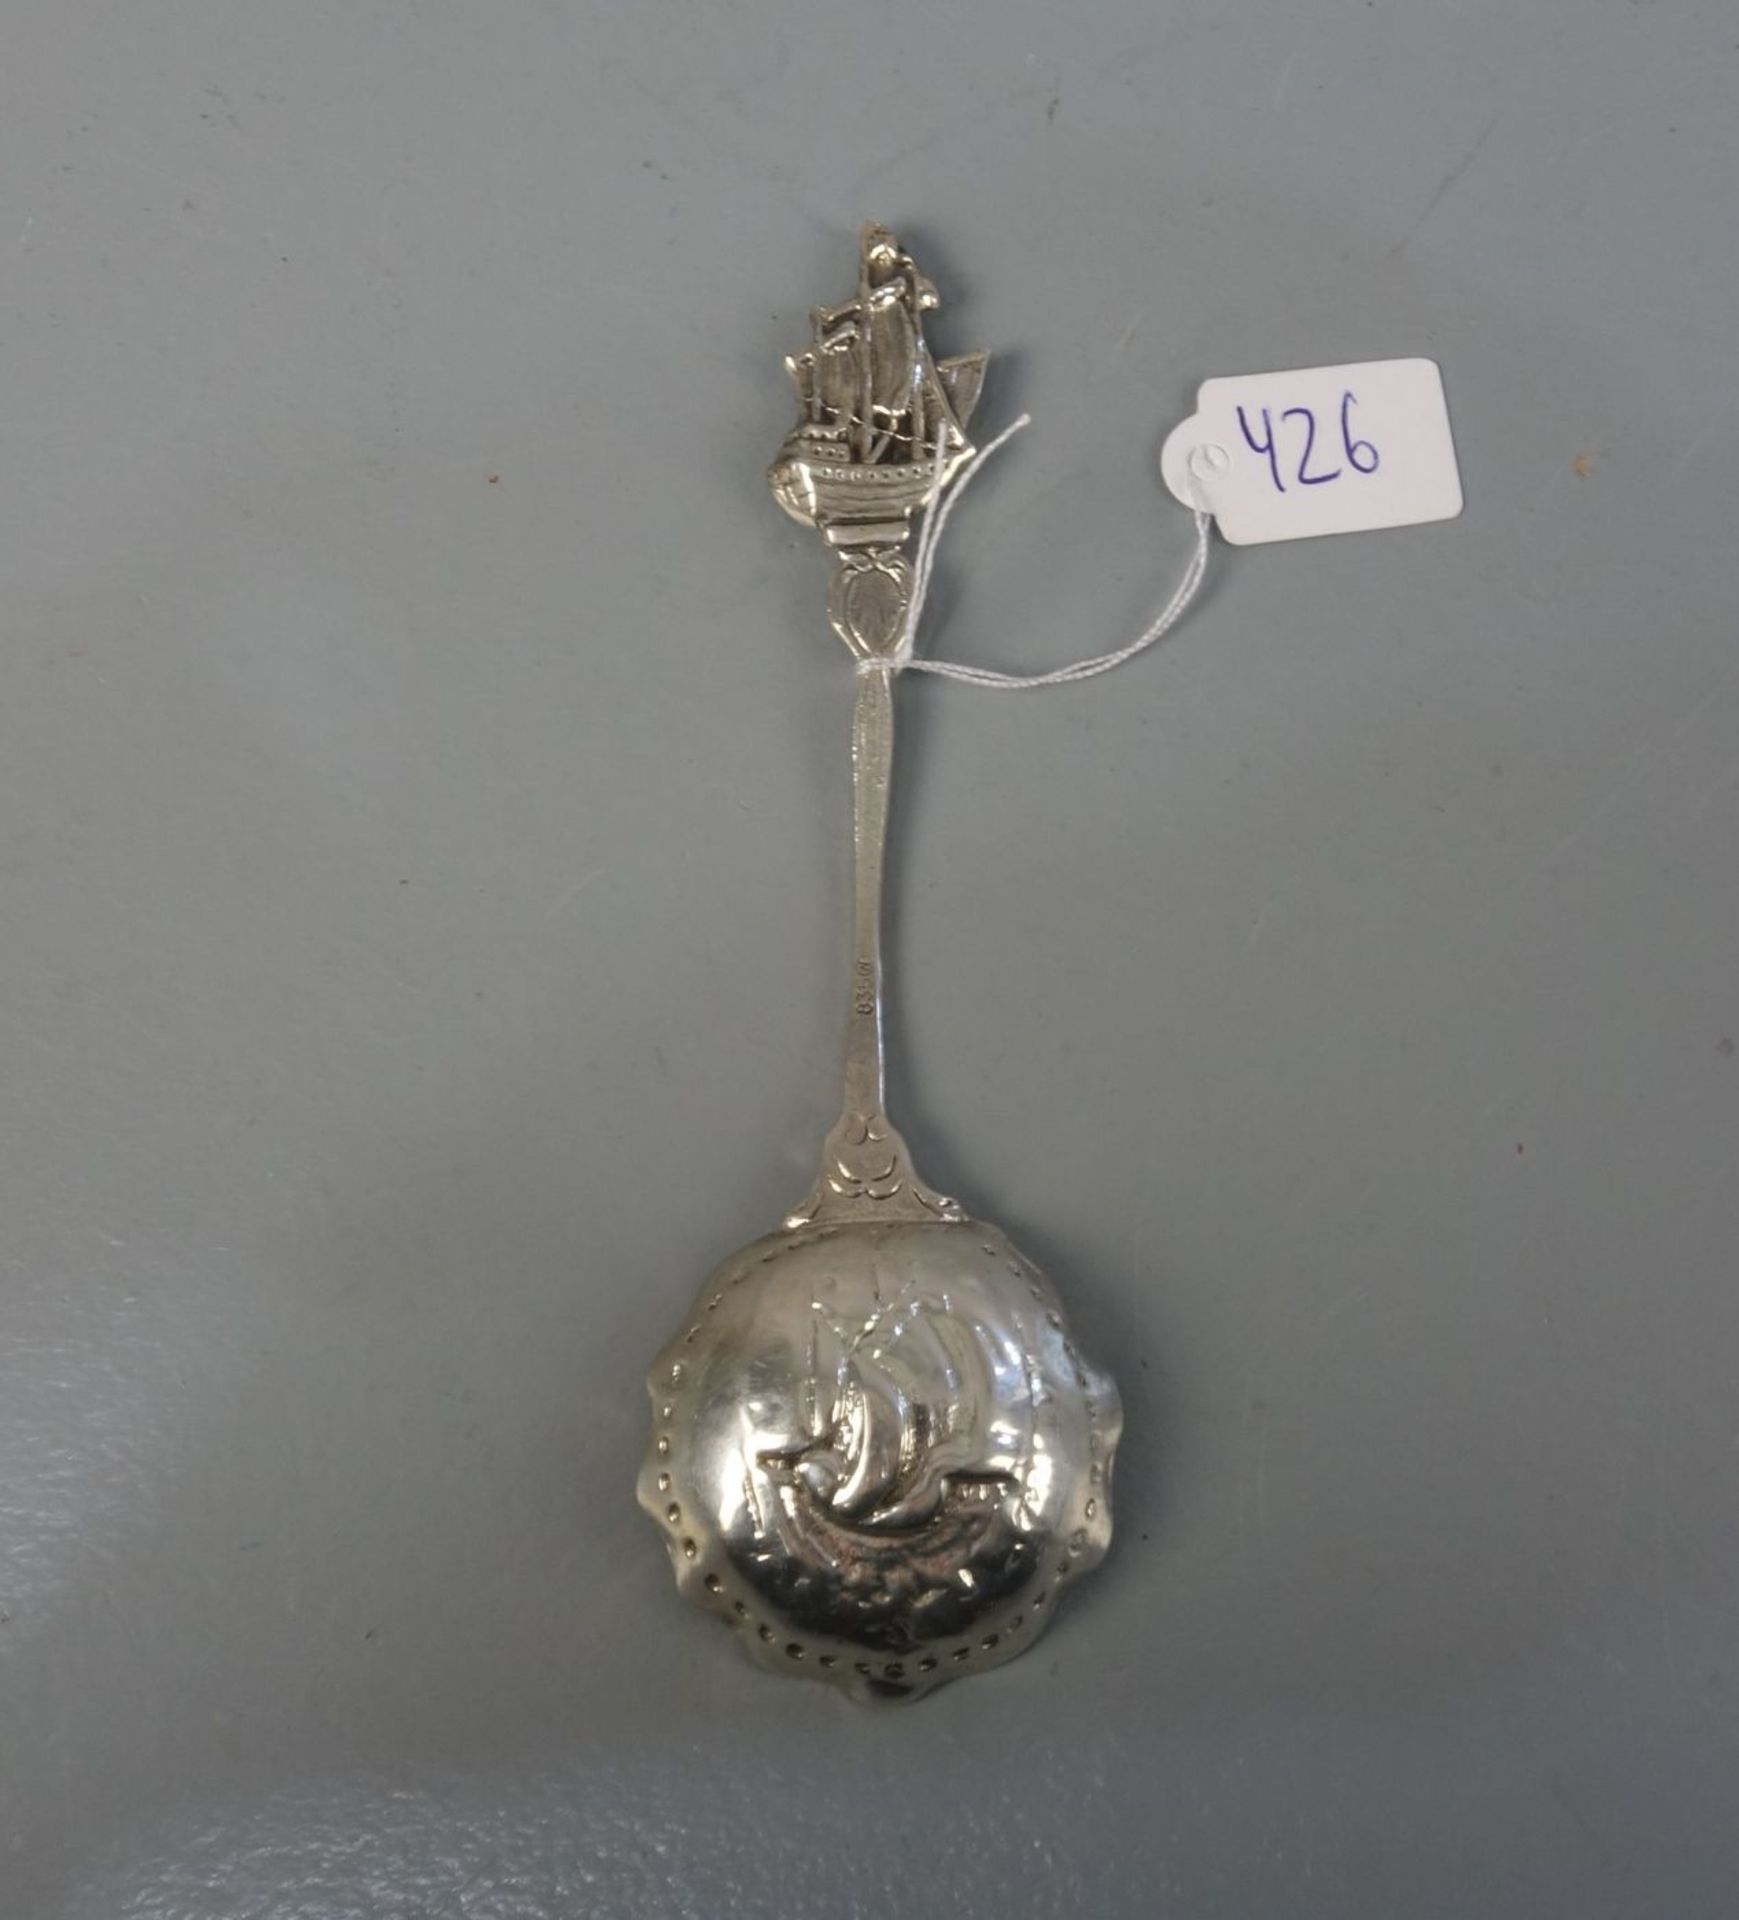 VORLEGEBESTECK: MARITIMER SAHNELÖFFEL / MESSLÖFFEL FÜR TEE / silver cream spoon or caddy spoon, 1. - Bild 3 aus 4